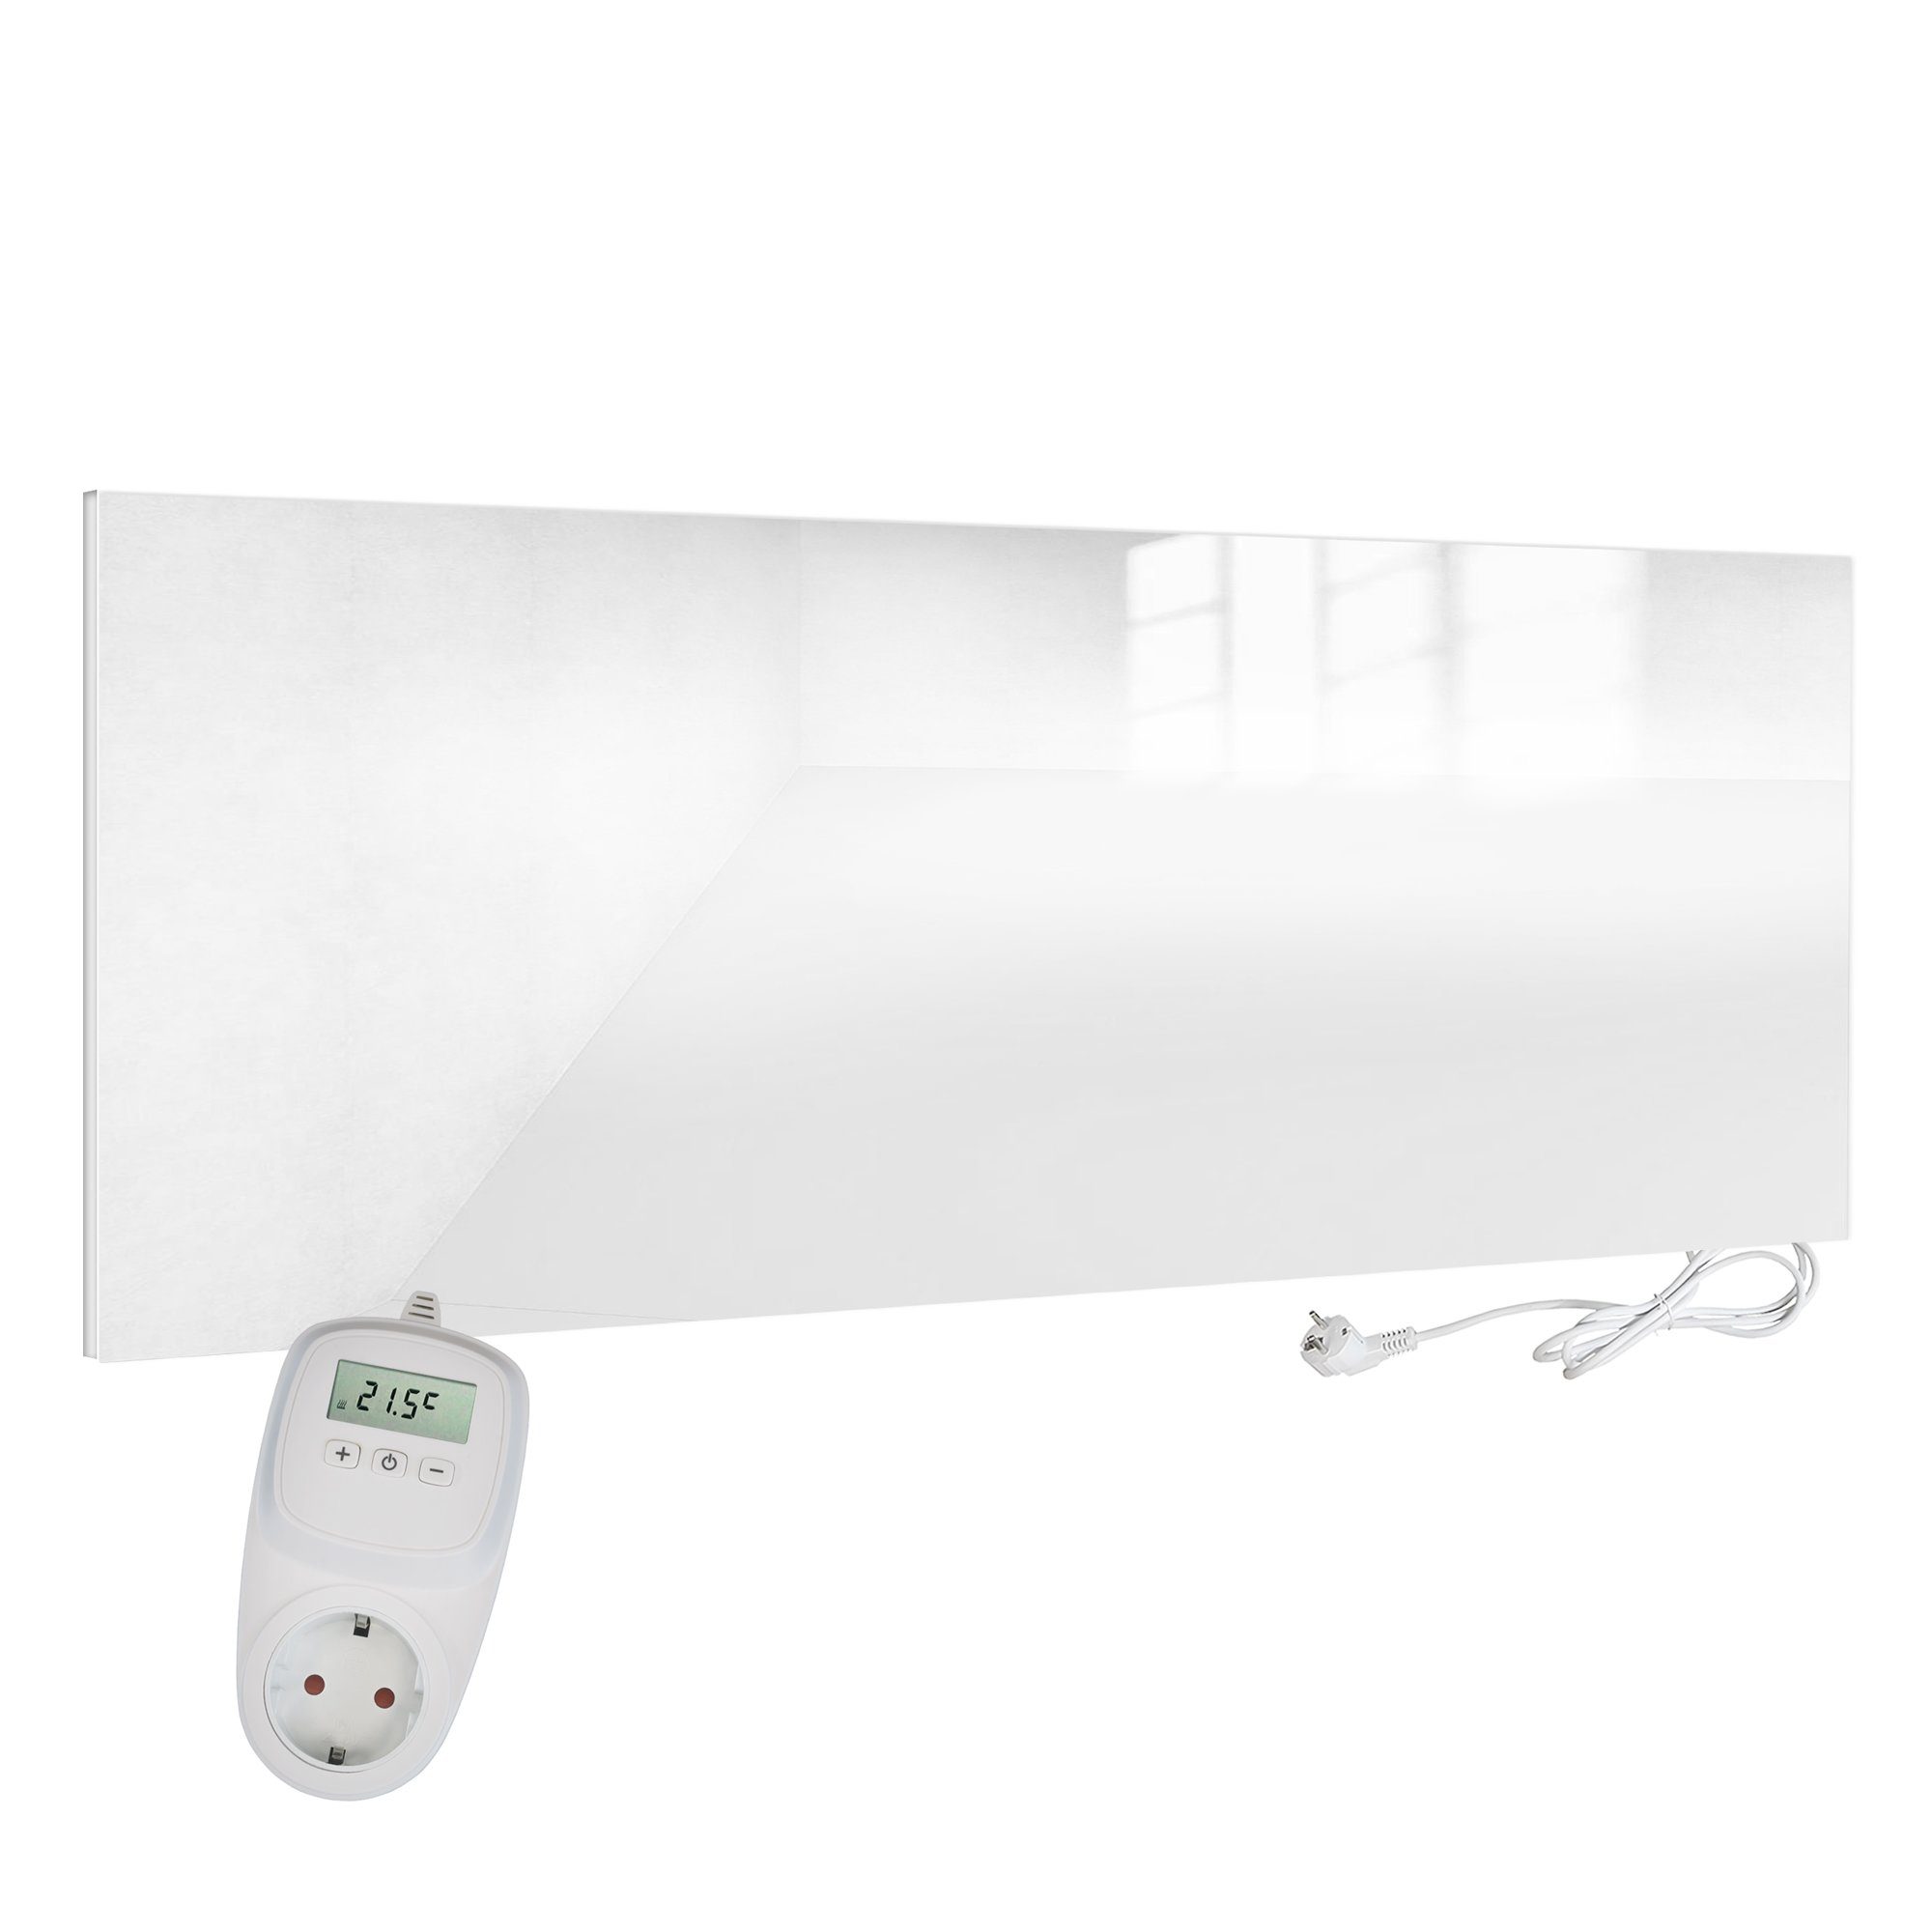 VIESTA Paneelheizkörper H700-GW weiß + weiß, VIESTA 700 mit Thermostat Ein-Ausschalter Infrarotheizung TH10, + TH10 Glas H700-GW VIESTA Watt